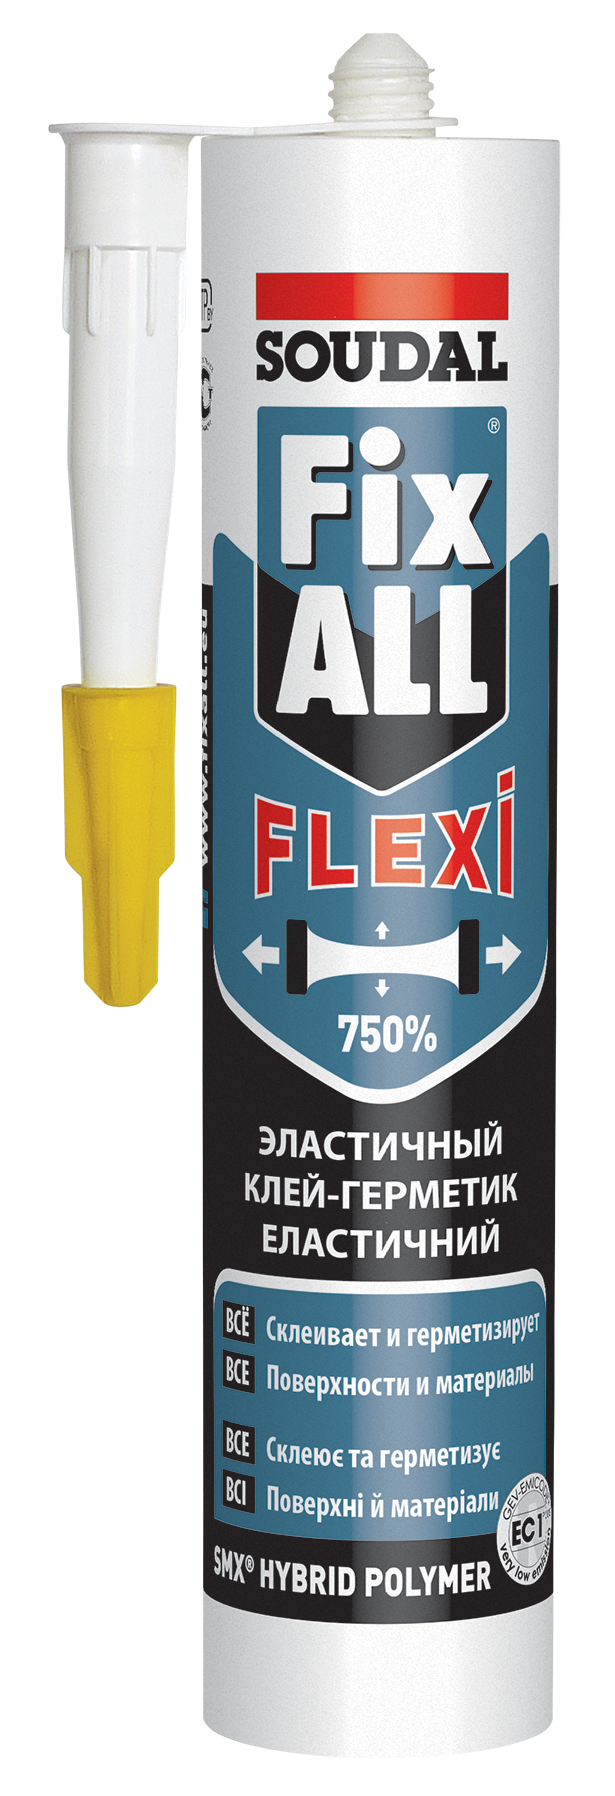 Fix ALL FLEXI